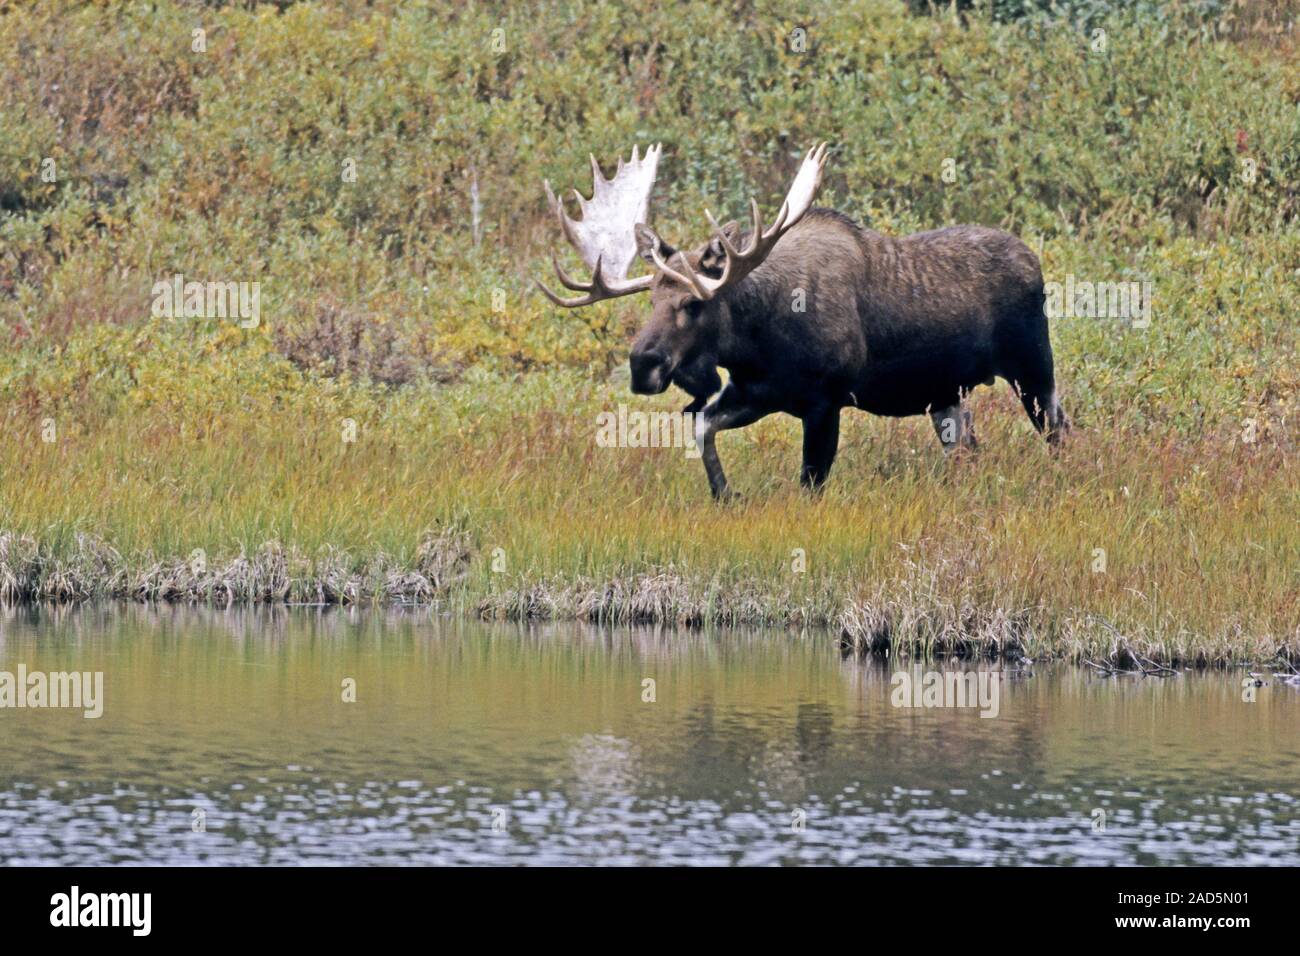 bull Moose / Alaska Moose / Alaskan Moose / Giant Moose Stock Photo